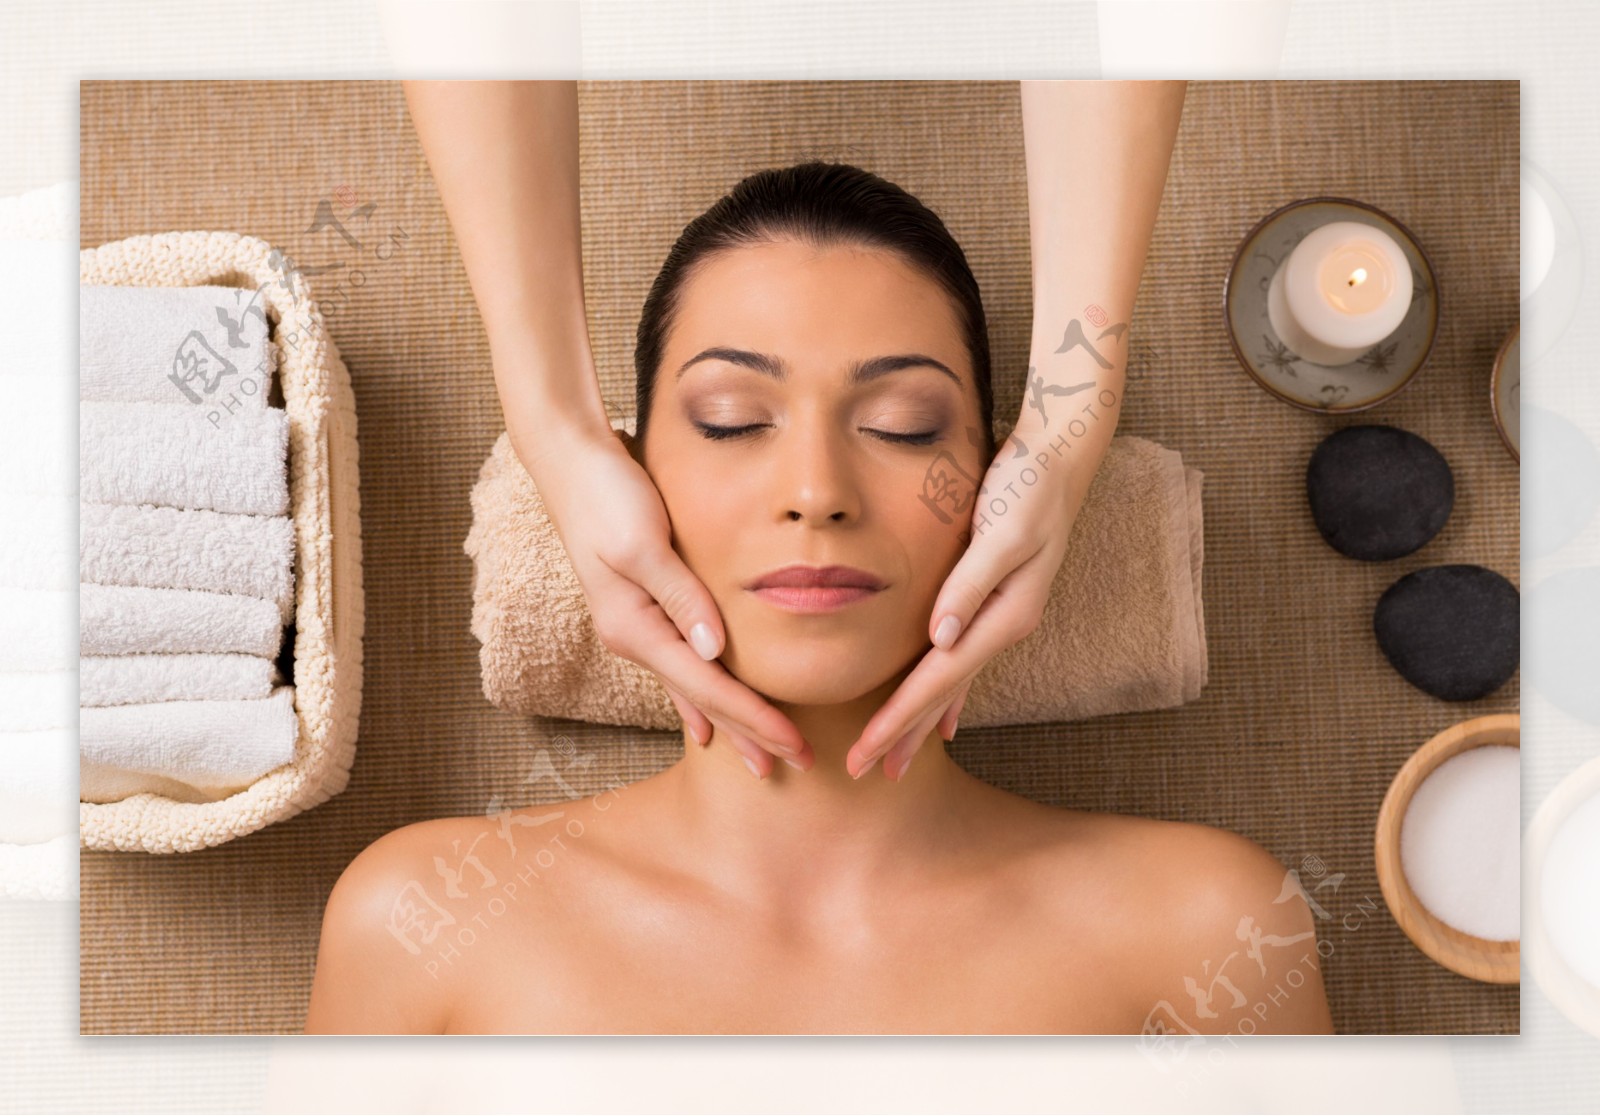 Salon Services: Massage, Facial, Nail, Hair at Heart & Soles Day Spa